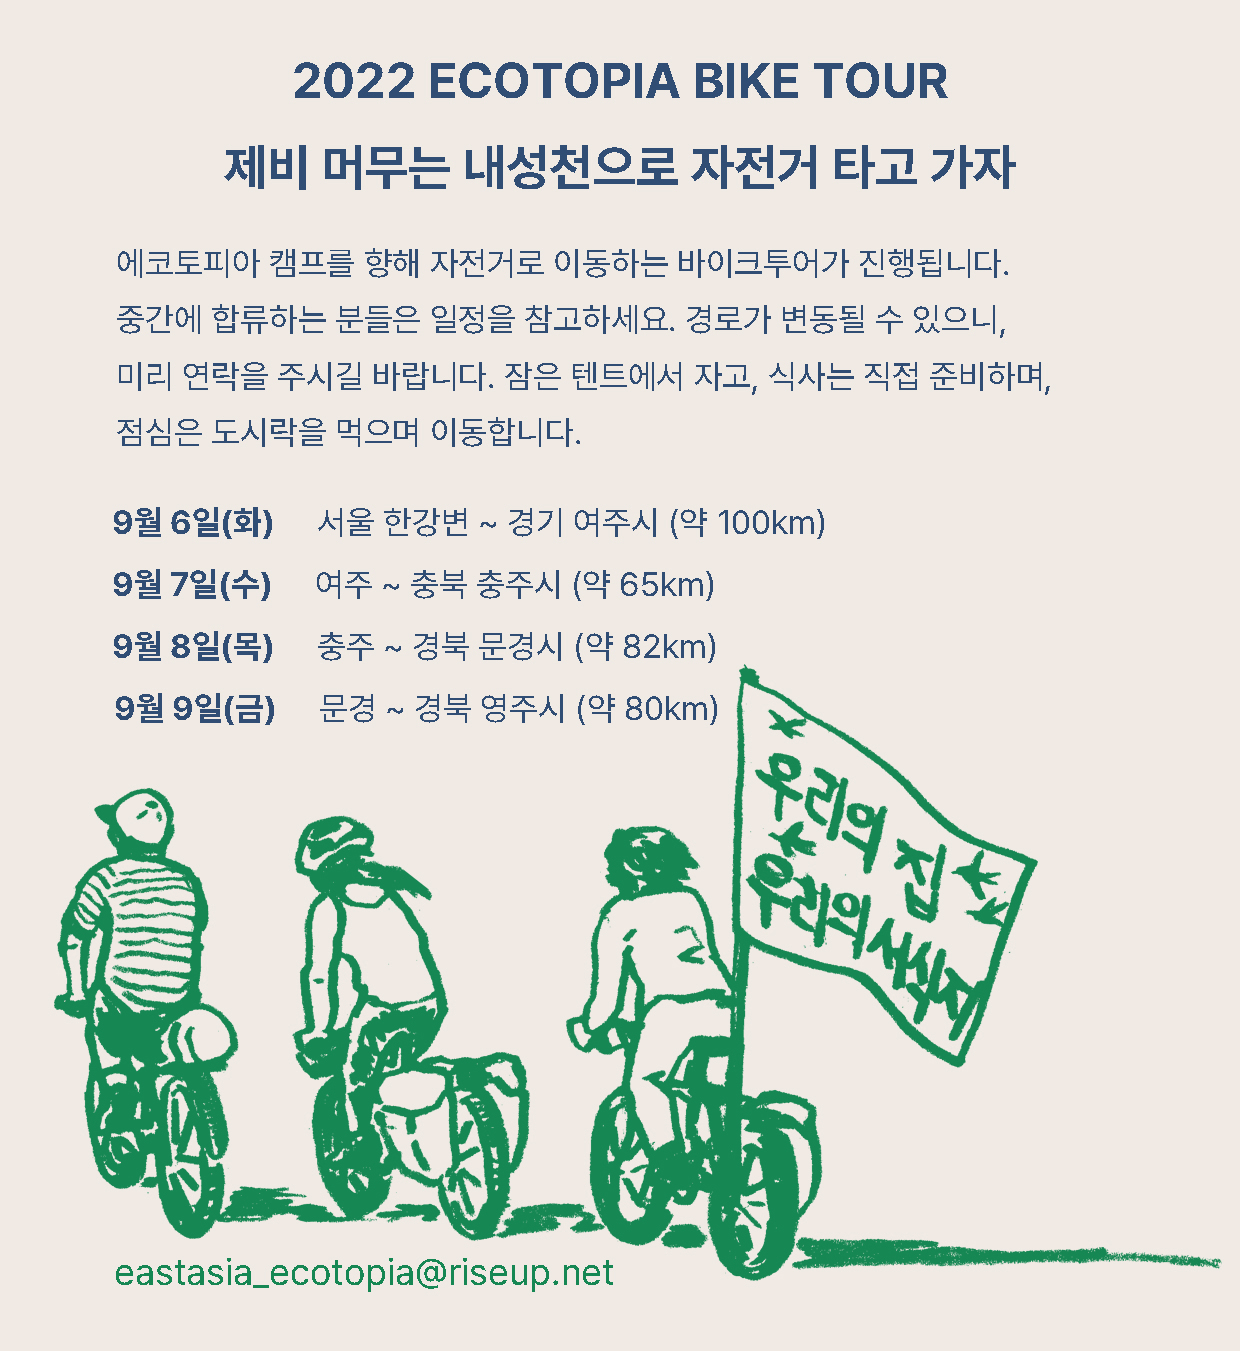 2022 ecotopia bike tour, 제비 머무는 내성천으로 자전거 타고 가자 / 에코토피아 캠프를 향해 자전거로 이동하는 바이크투어가 진행됩니다. 중간에 합류하는 분들은 일정을 참고하세요. 경로가 변동될 수 있으니, 미리 연락을 주시길 바랍니다. 잠은 텐트에서 자고, 식사는 직접 준비하며, 점심은 도시락을 먹으며 이동합니다. / 9월 6일(화) : 서울 한강변 ~ 경기 여주시 (약 100km)  > 9월 7일(수) : 여주 ~ 충북 충주시 (약 65km) > 9월 8일(목) : 충주 ~ 경북 문경시 (약 82km) > 9월 9일(금) : 문경 ~ 경북 영주시 (약 80km) / eastasia.ecotopia@riseup.net